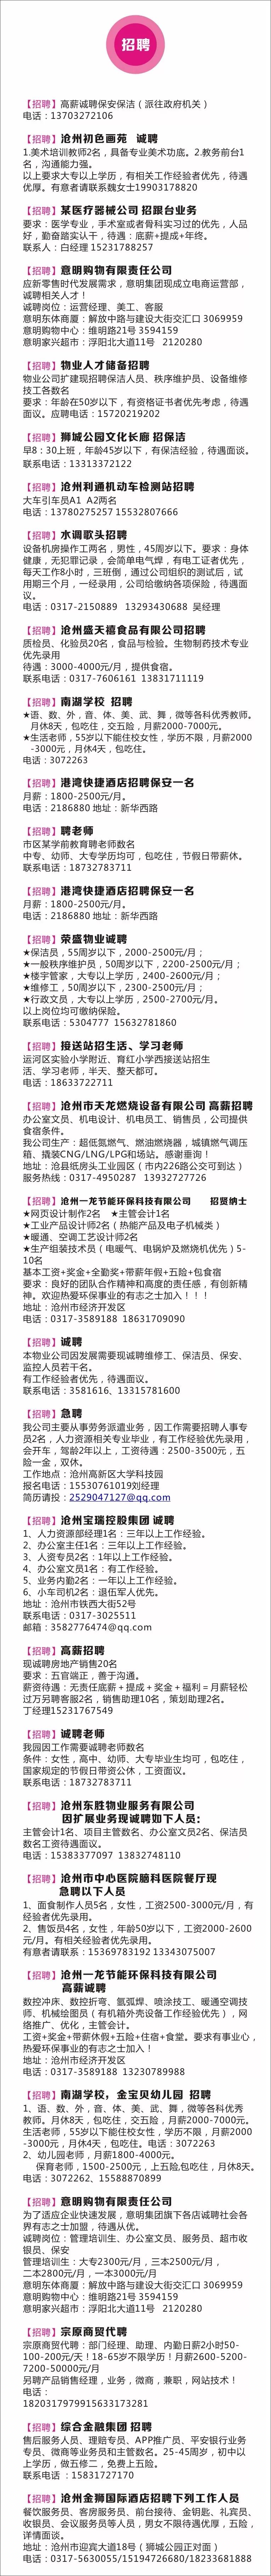 沧州晚报 招聘 家教 求职 分类广告信息热线 431 电话 微信 Qq